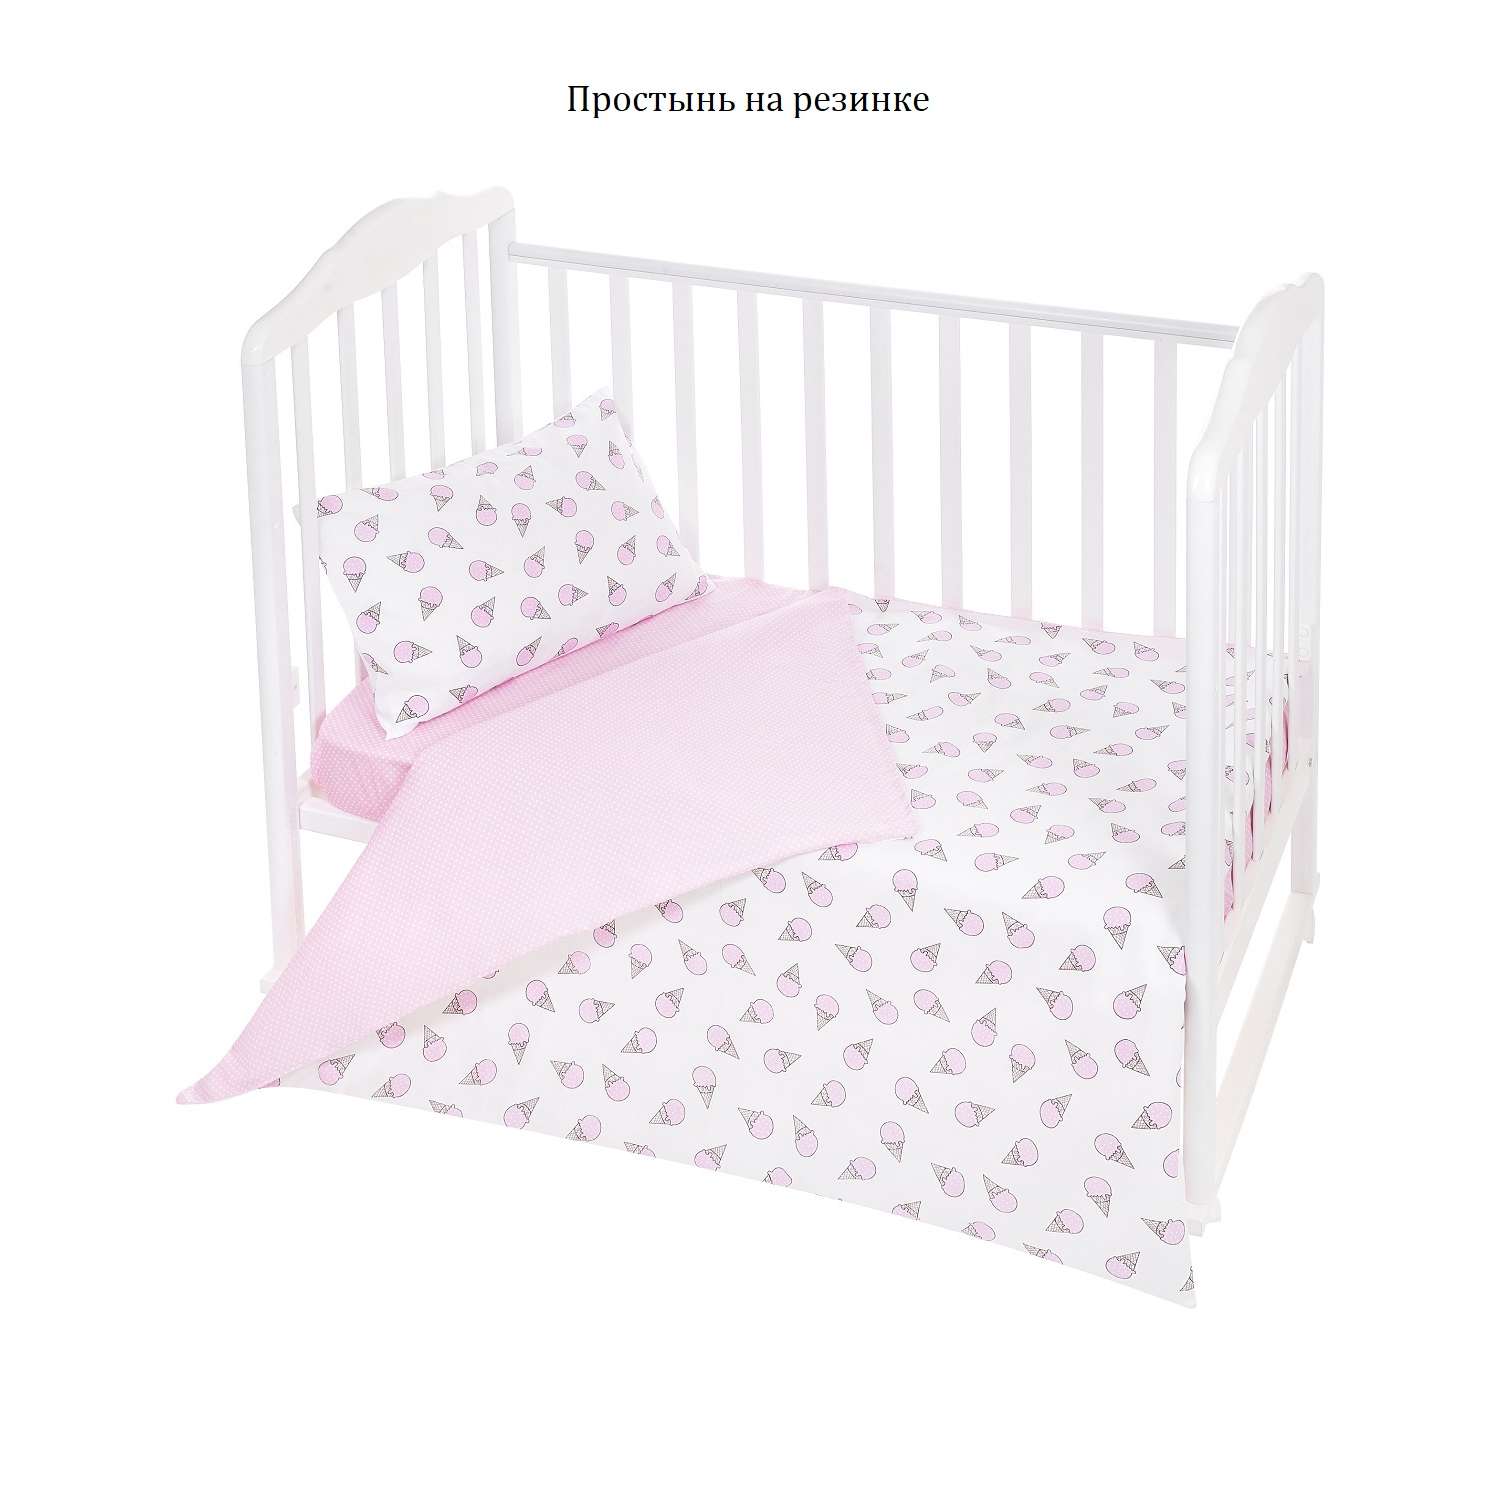 Комплект постельного белья Lemony kids Sundae Розовый/белый 3 предмета - фото 3